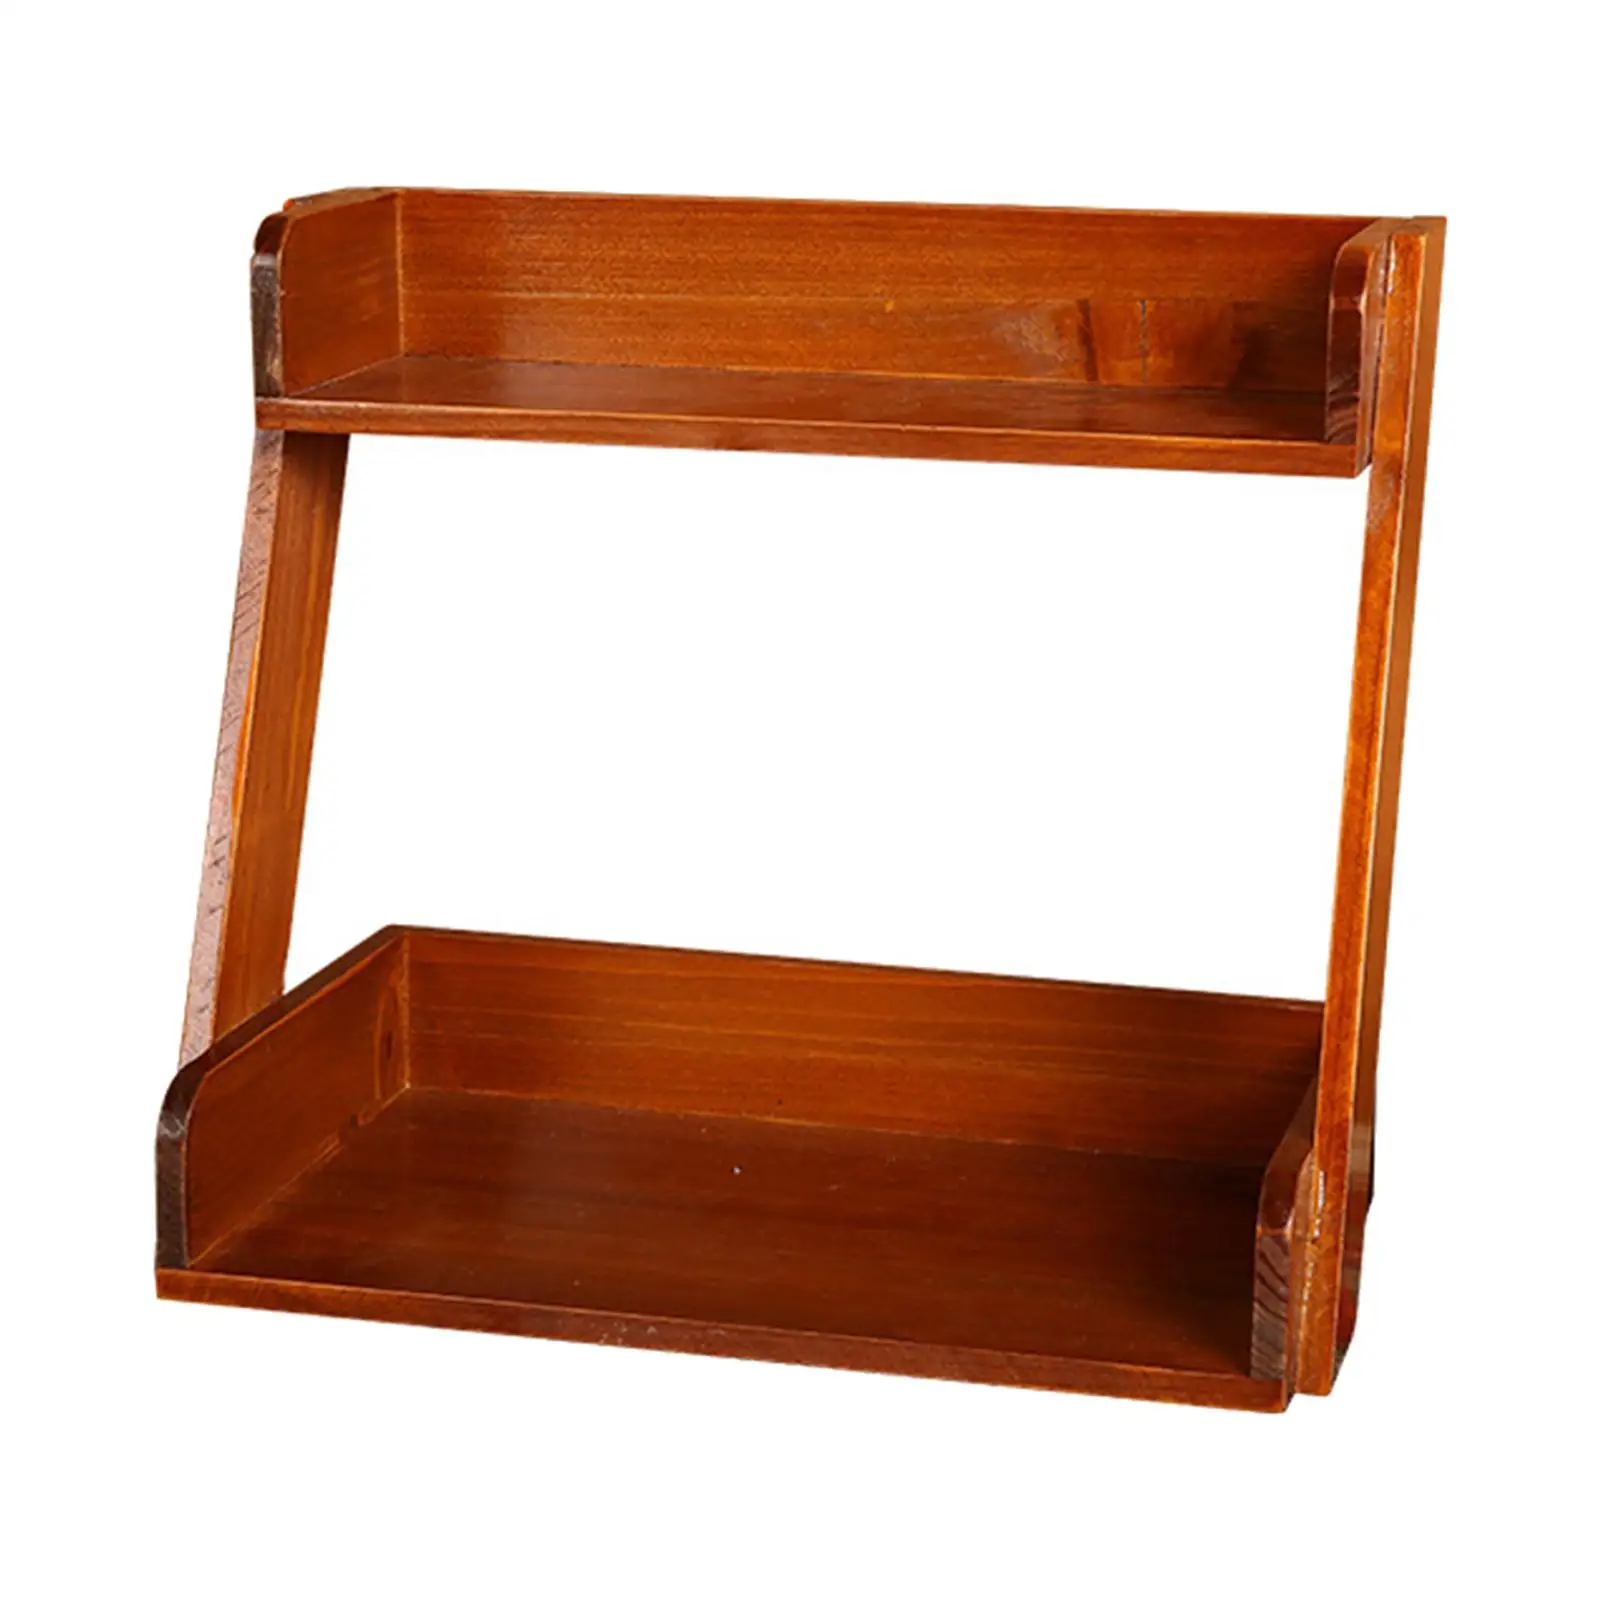 Solid Wood Desktop Shelves Spice Rack Display Stand Desk Bookshelf Organizer for